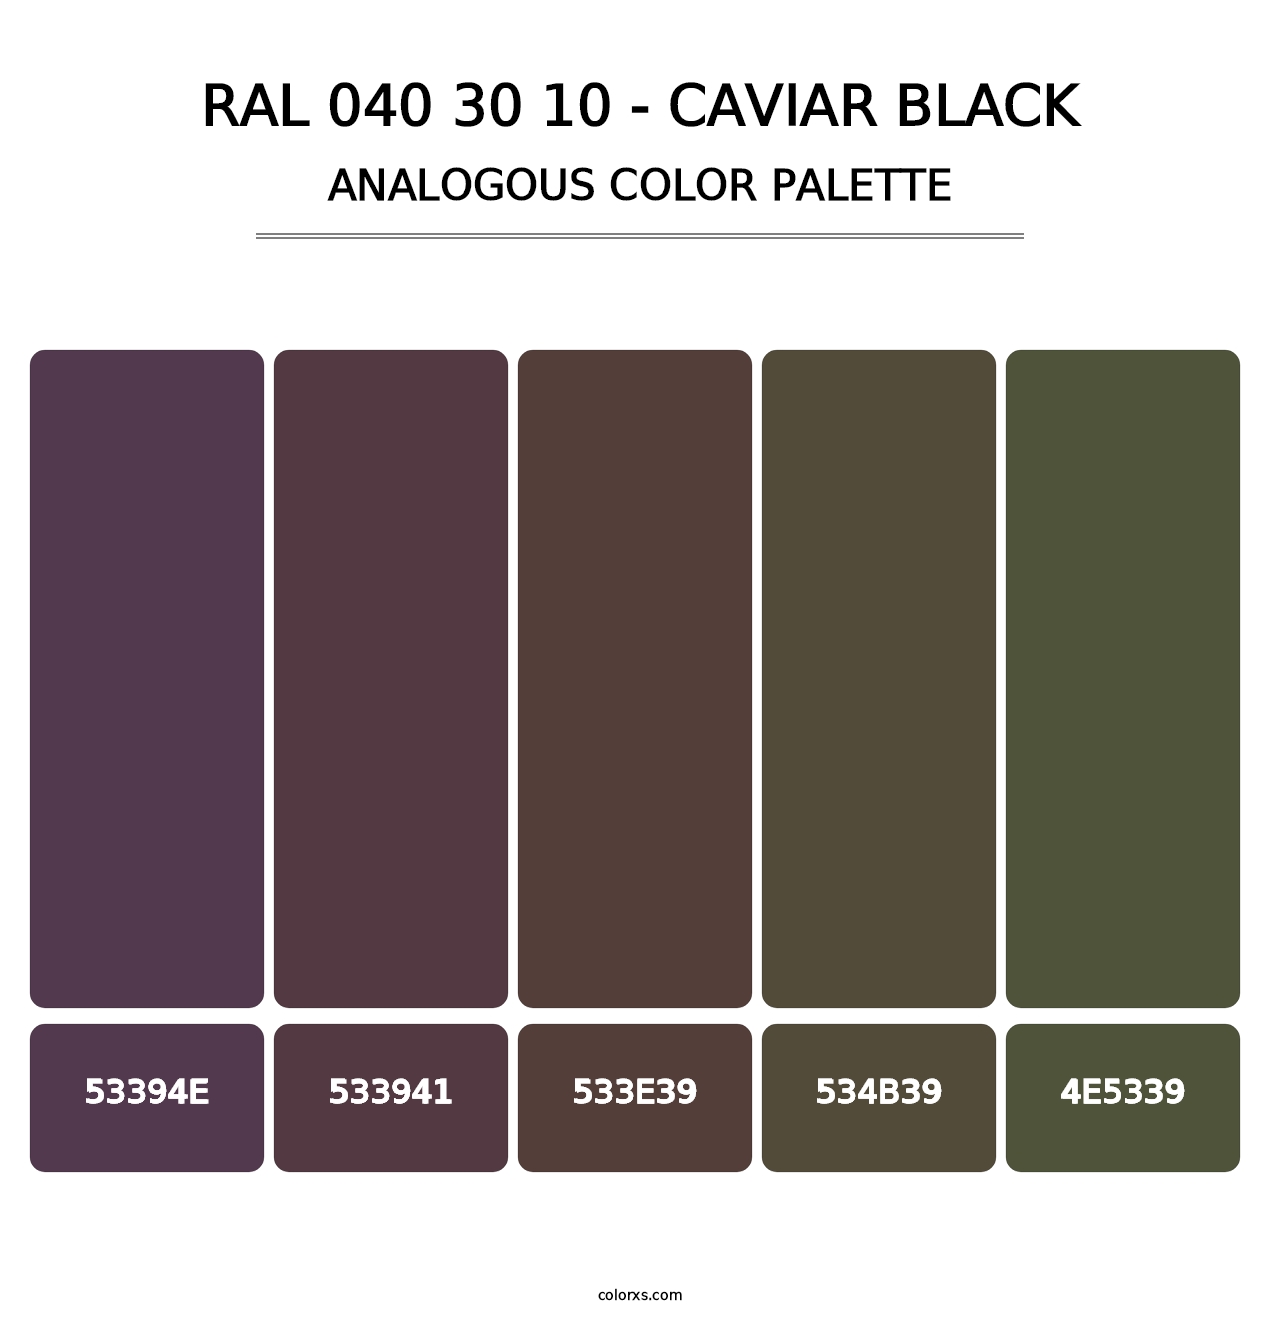 RAL 040 30 10 - Caviar Black - Analogous Color Palette